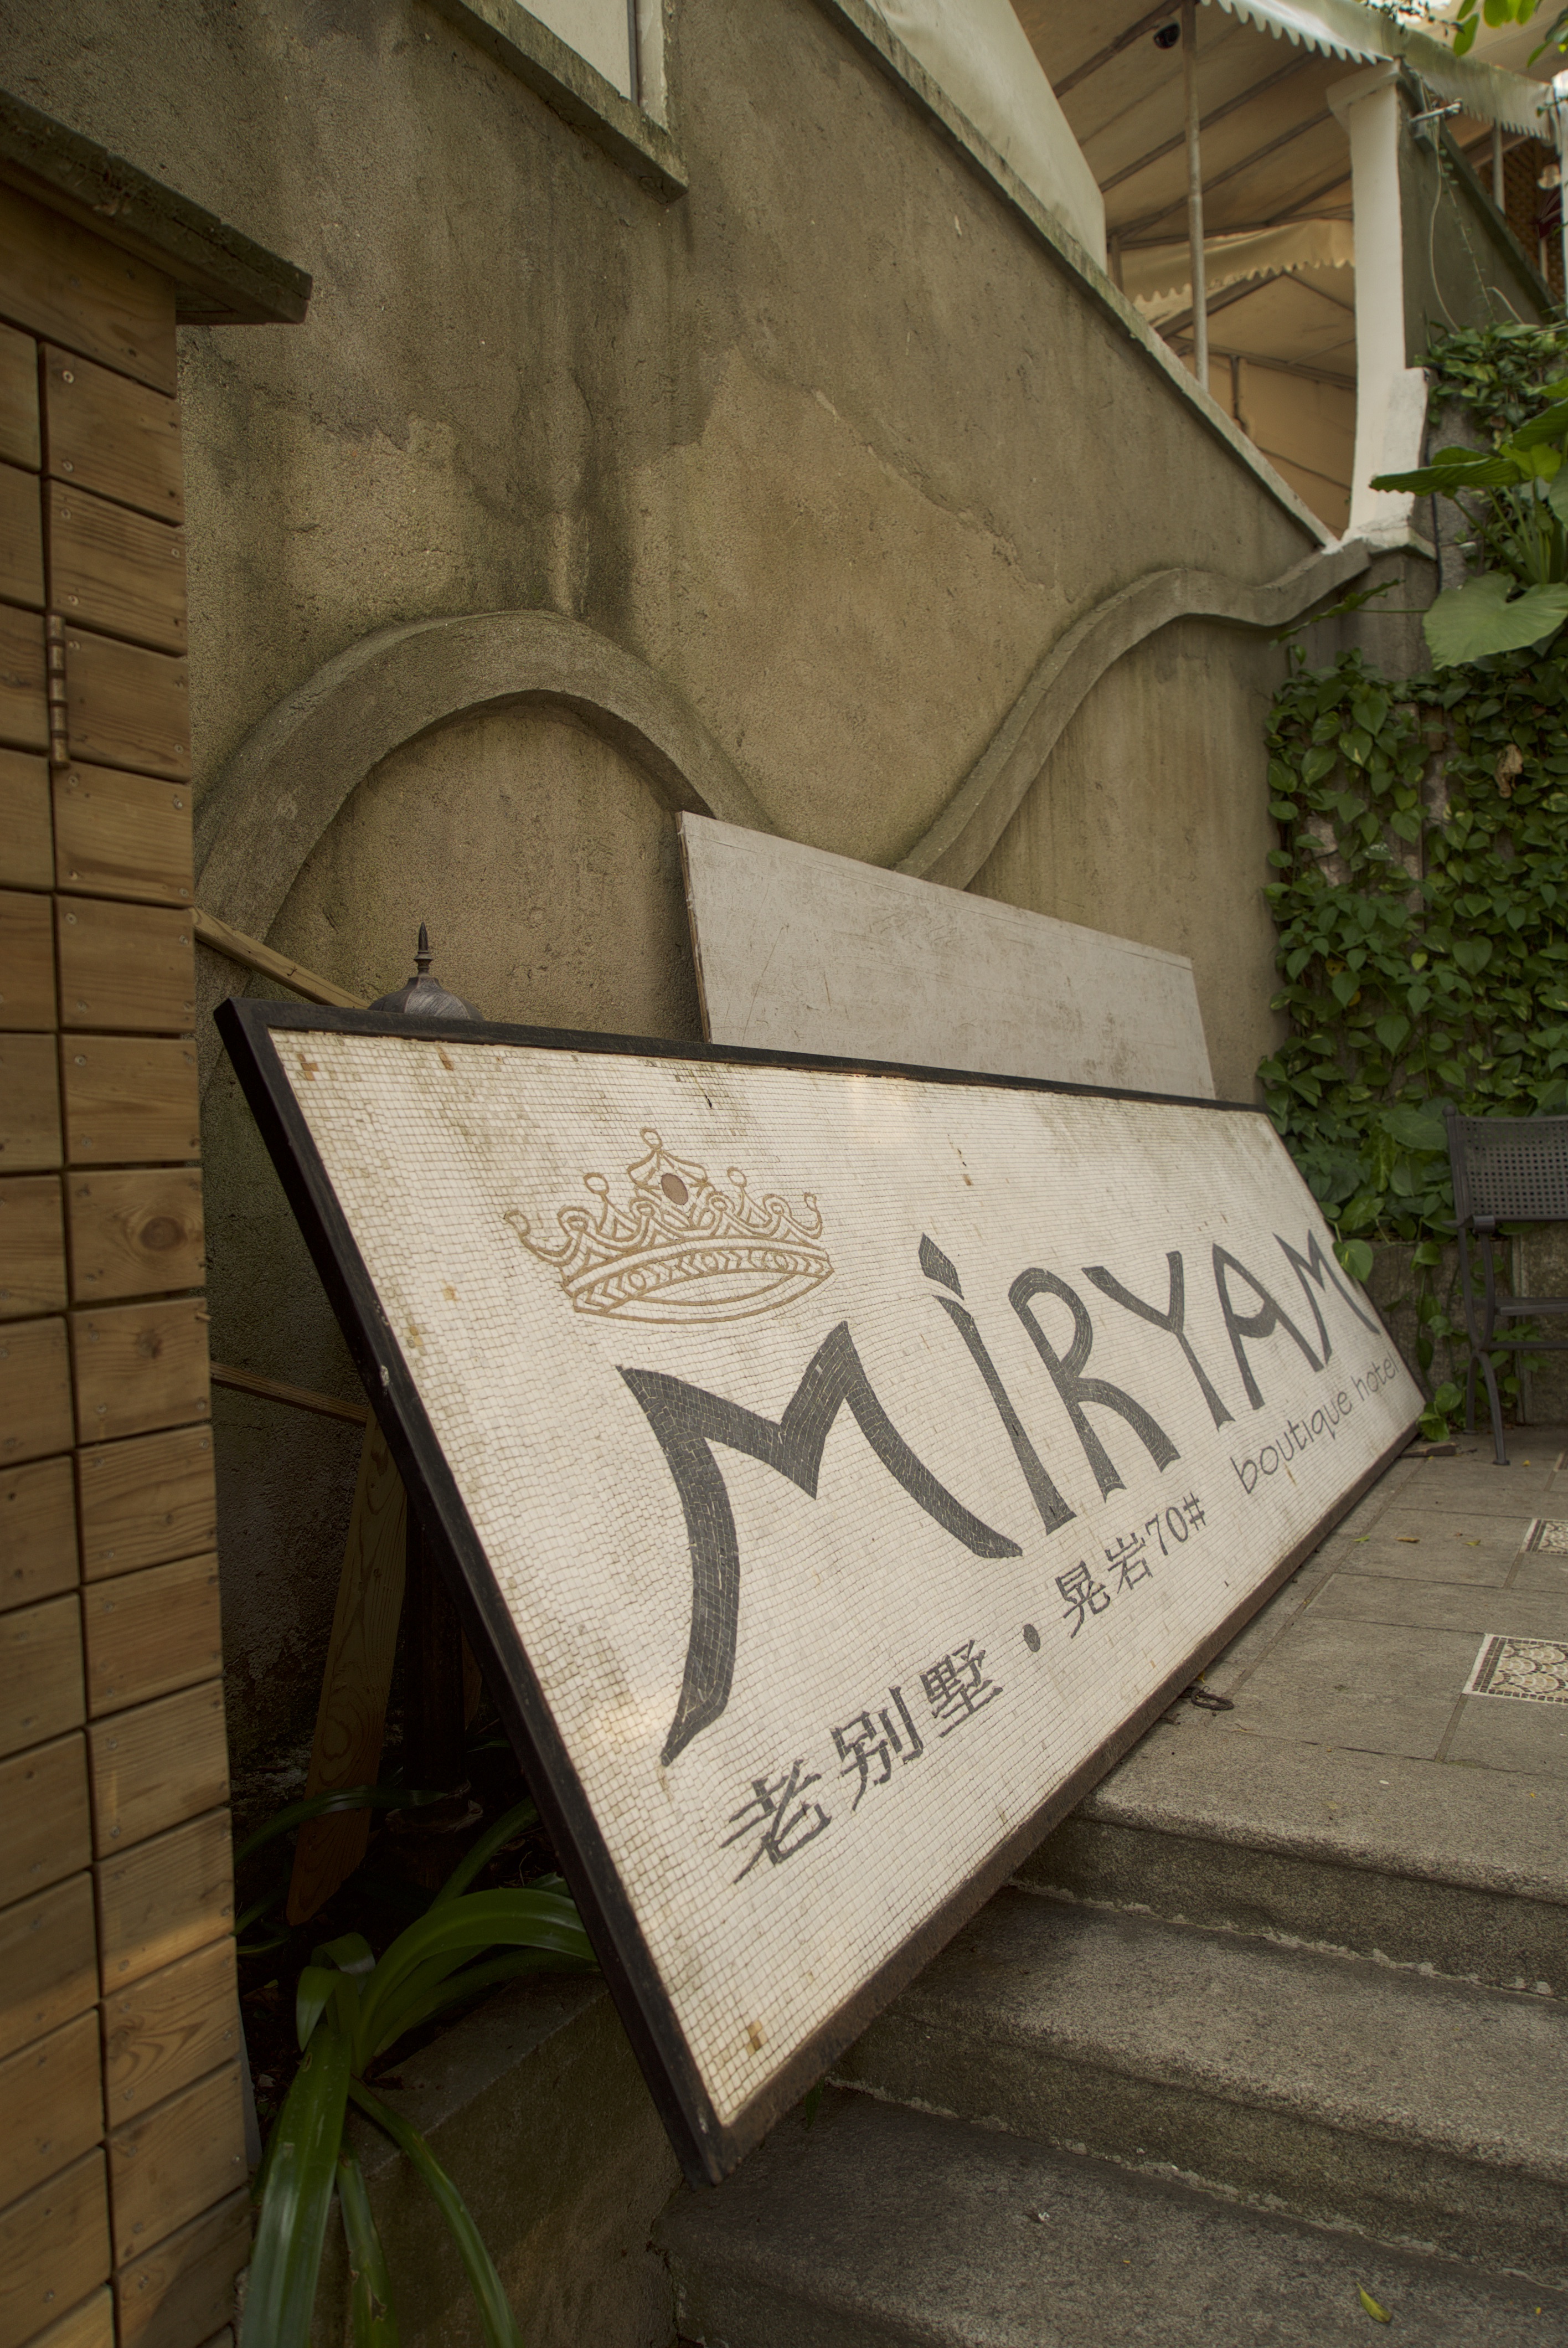 Miryam Hotel (Lao Bie Shu Lu Guan 老别墅旅馆)